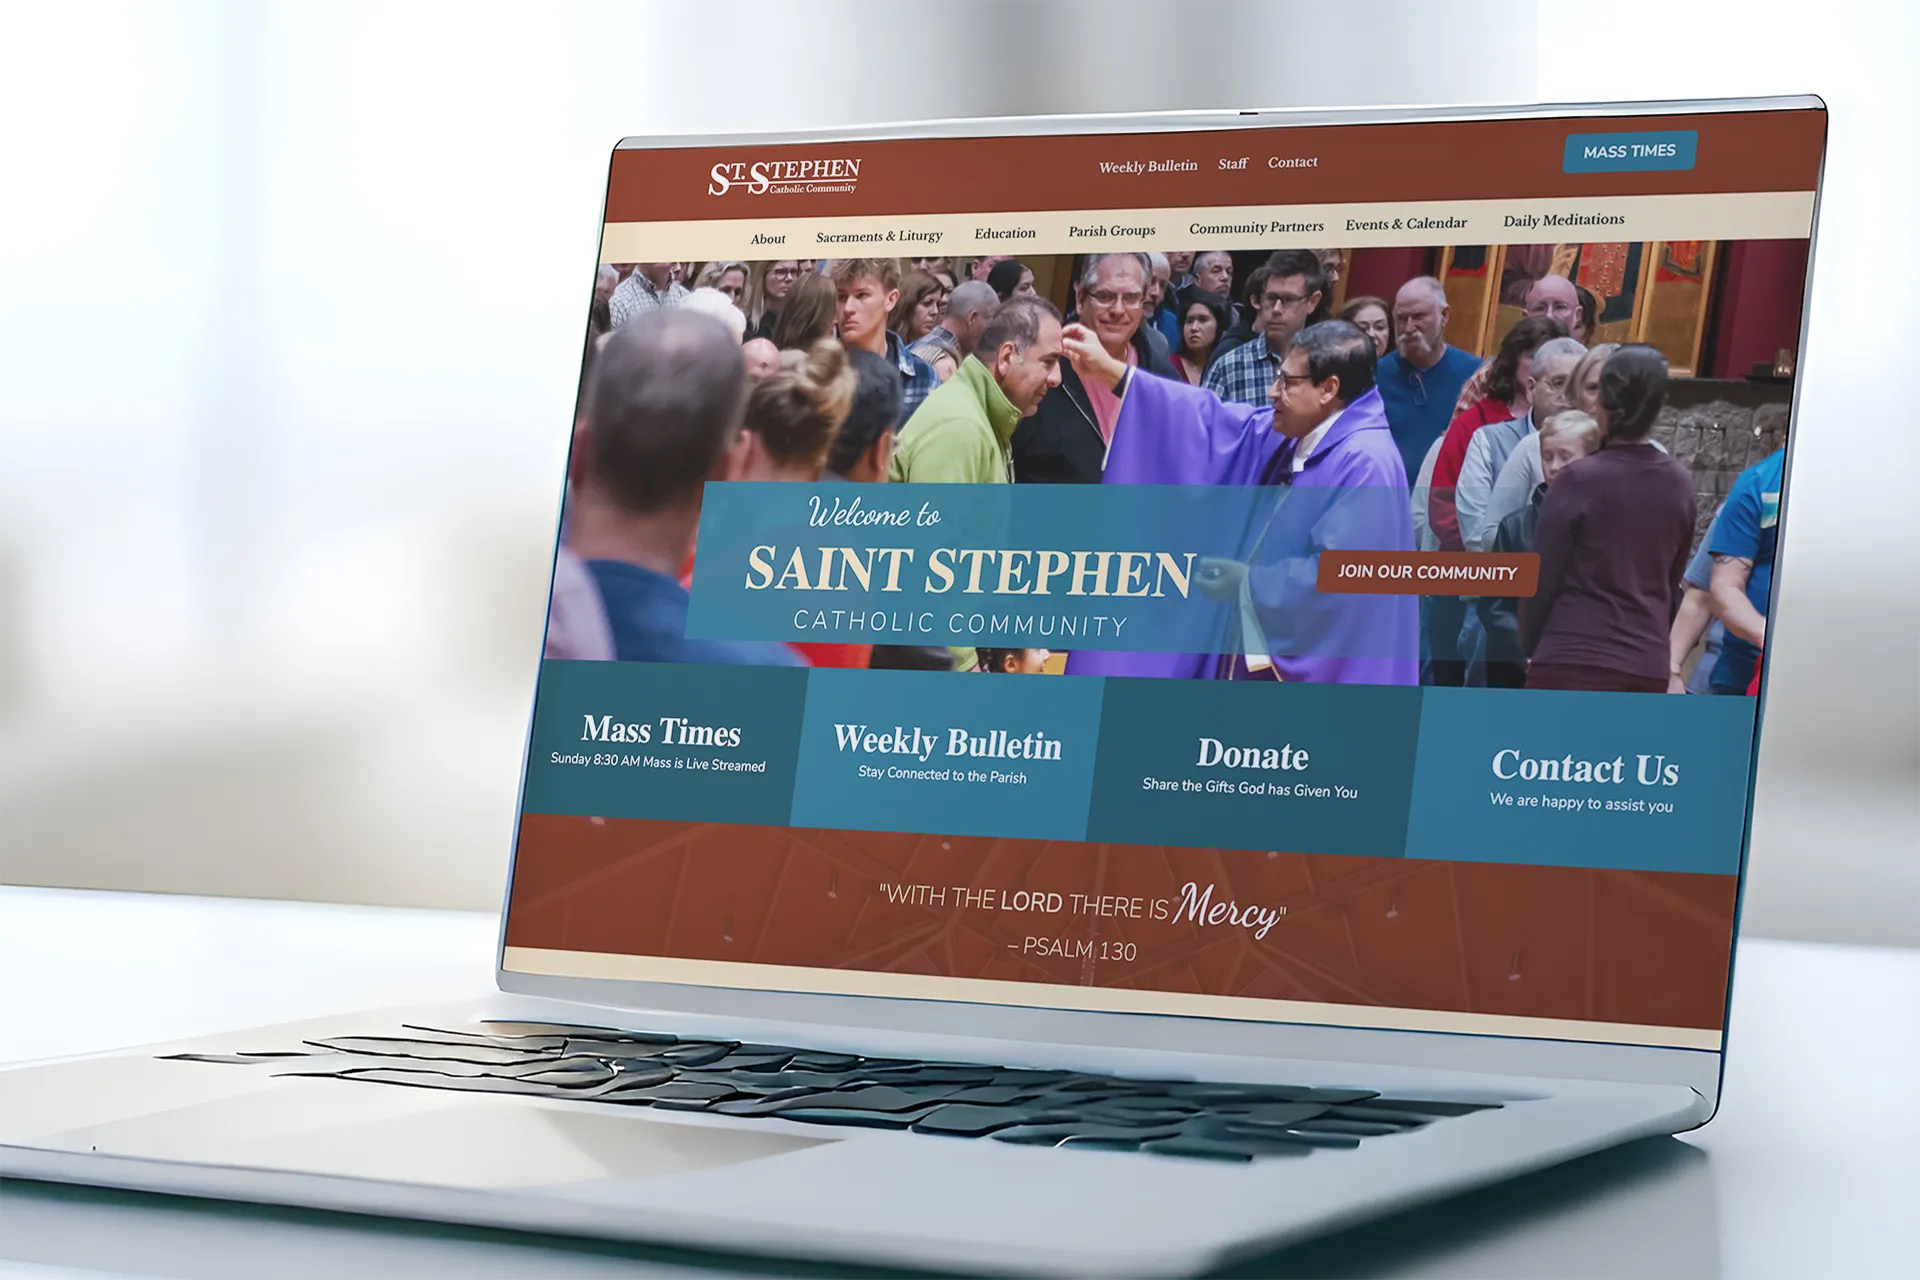 Saint Stephen Website on Laptop